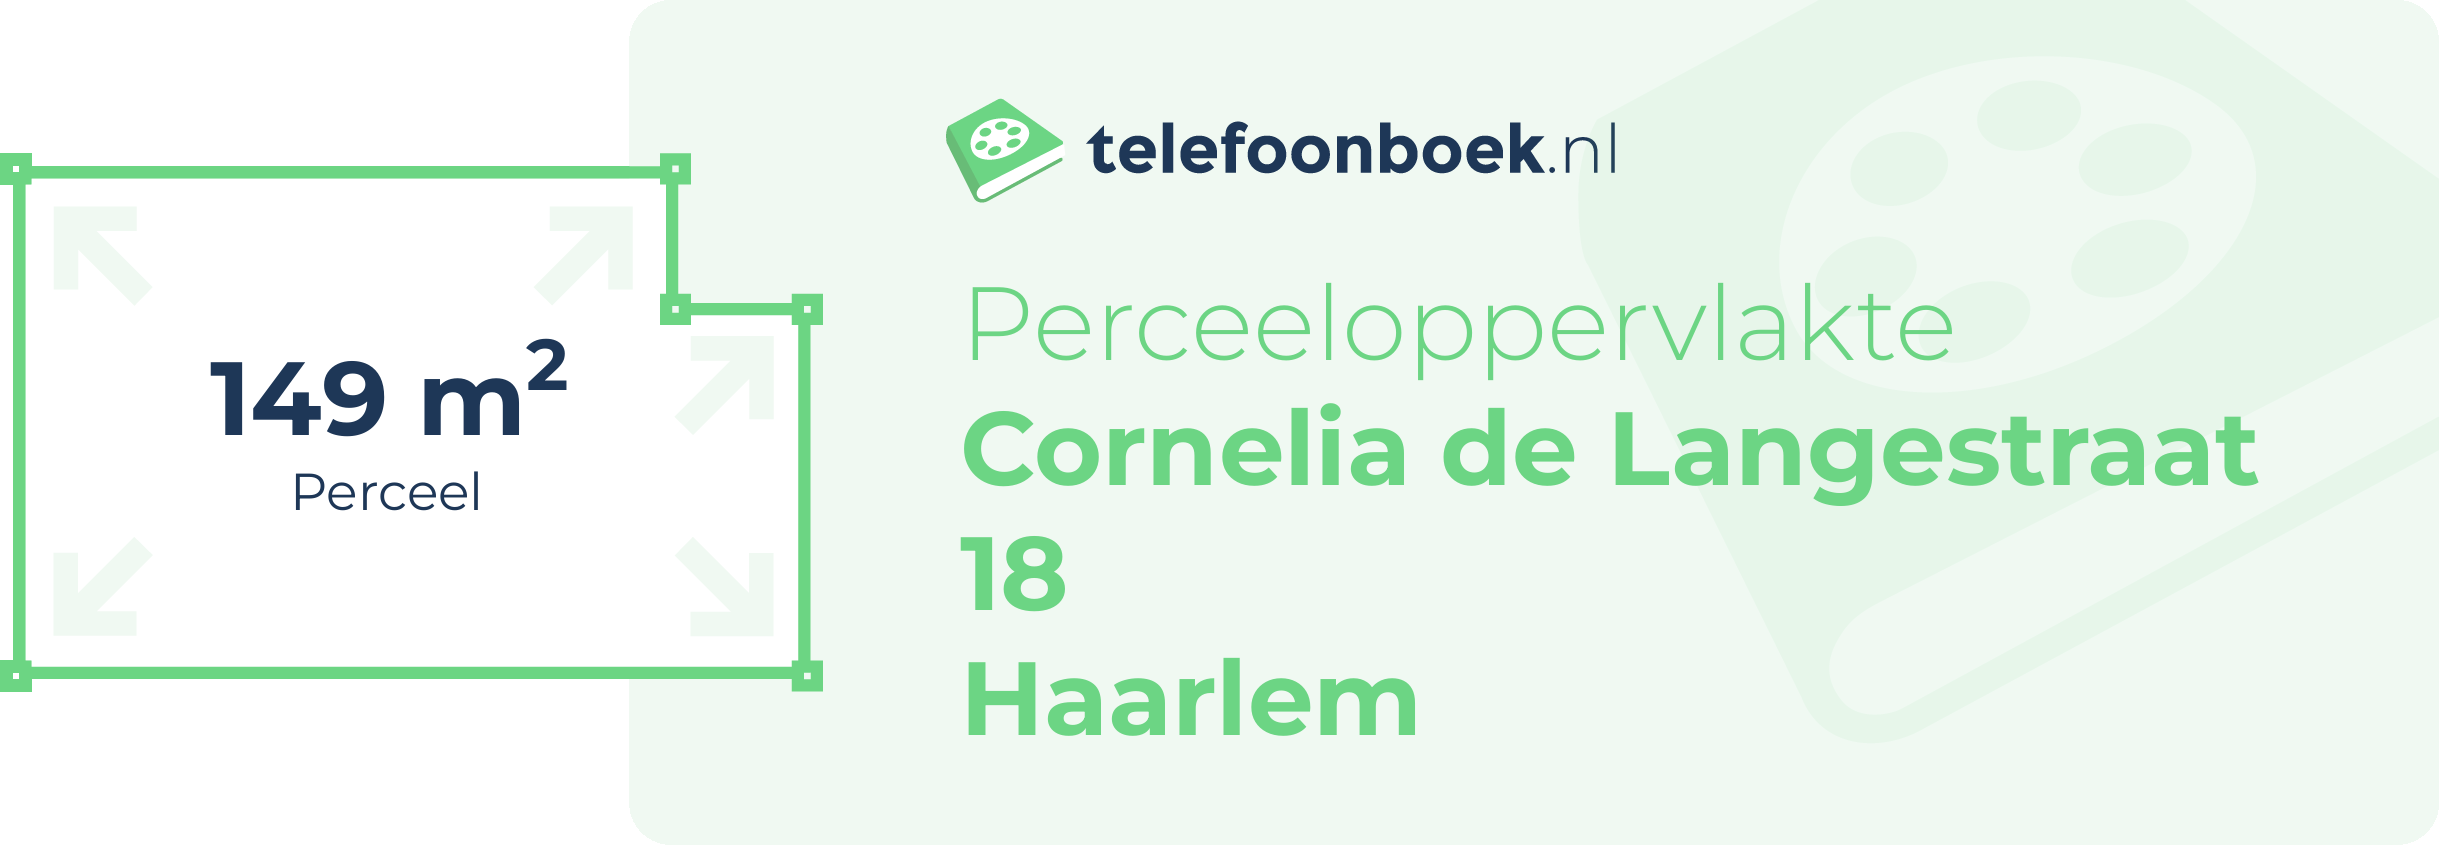 Perceeloppervlakte Cornelia De Langestraat 18 Haarlem